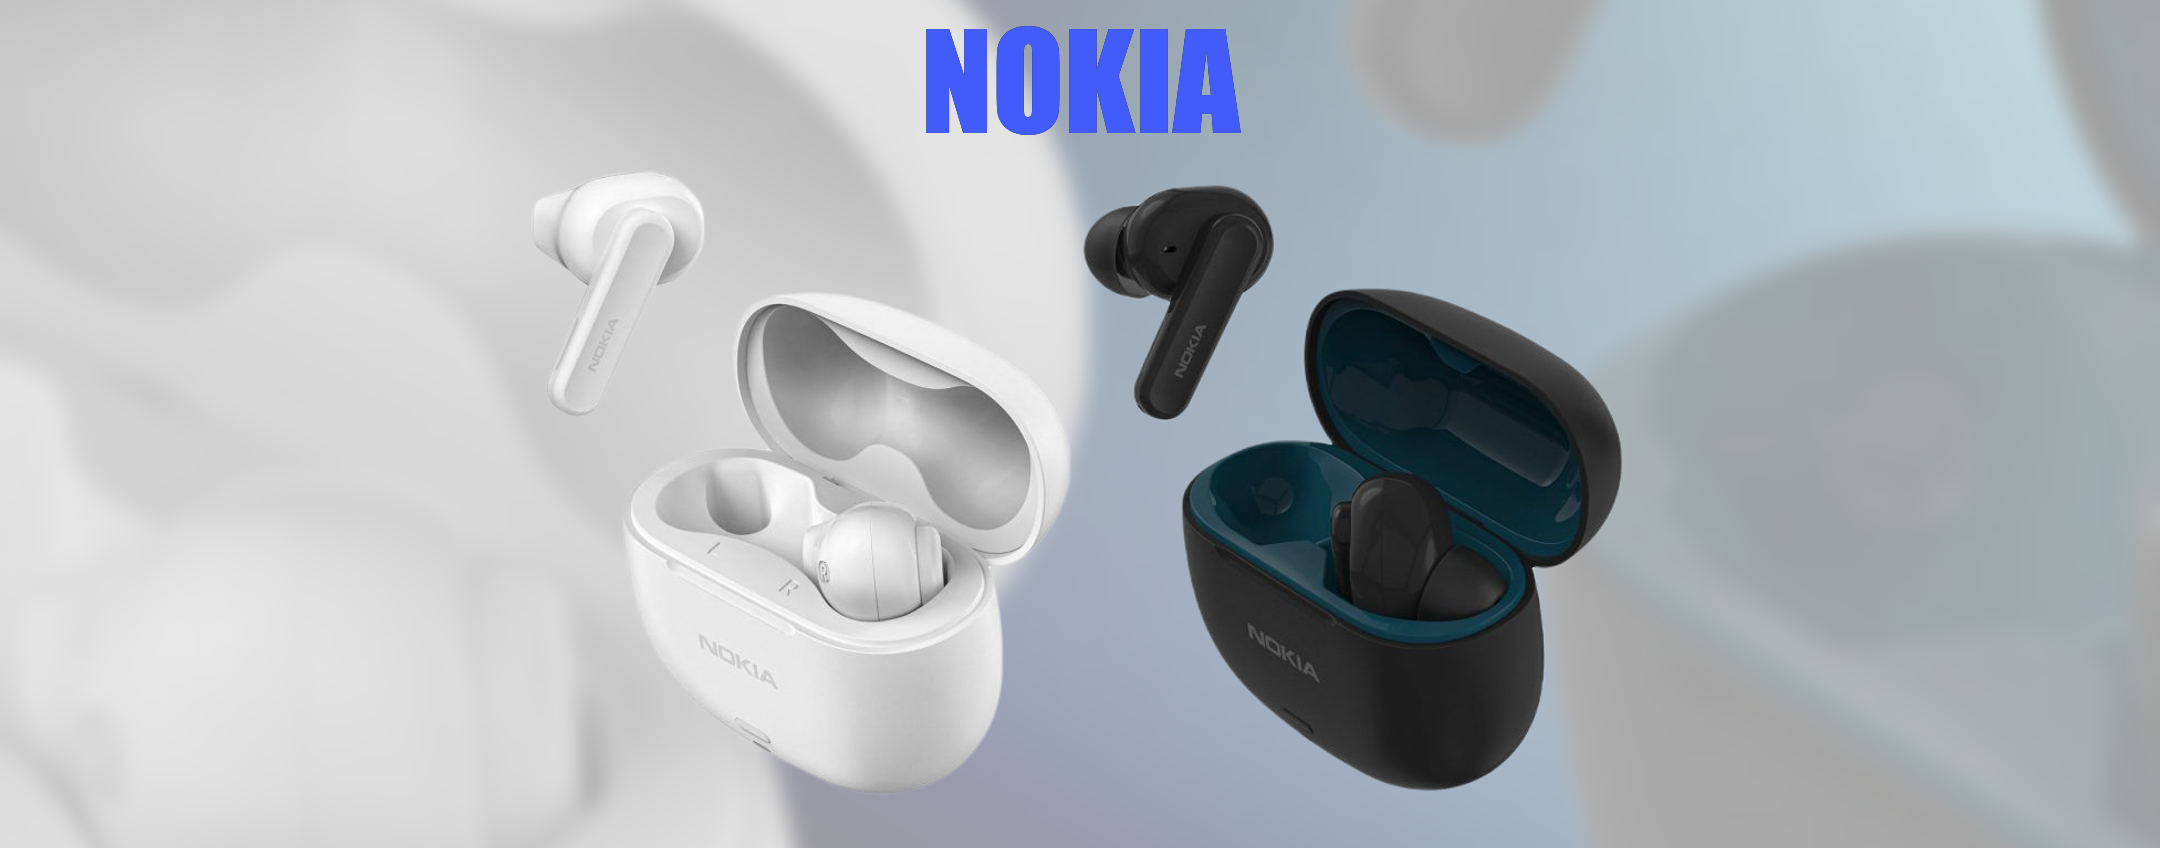 Nokia ufficializza i nuovi auricolari Go Earbuds 2+ e Earbuds 2 Pro